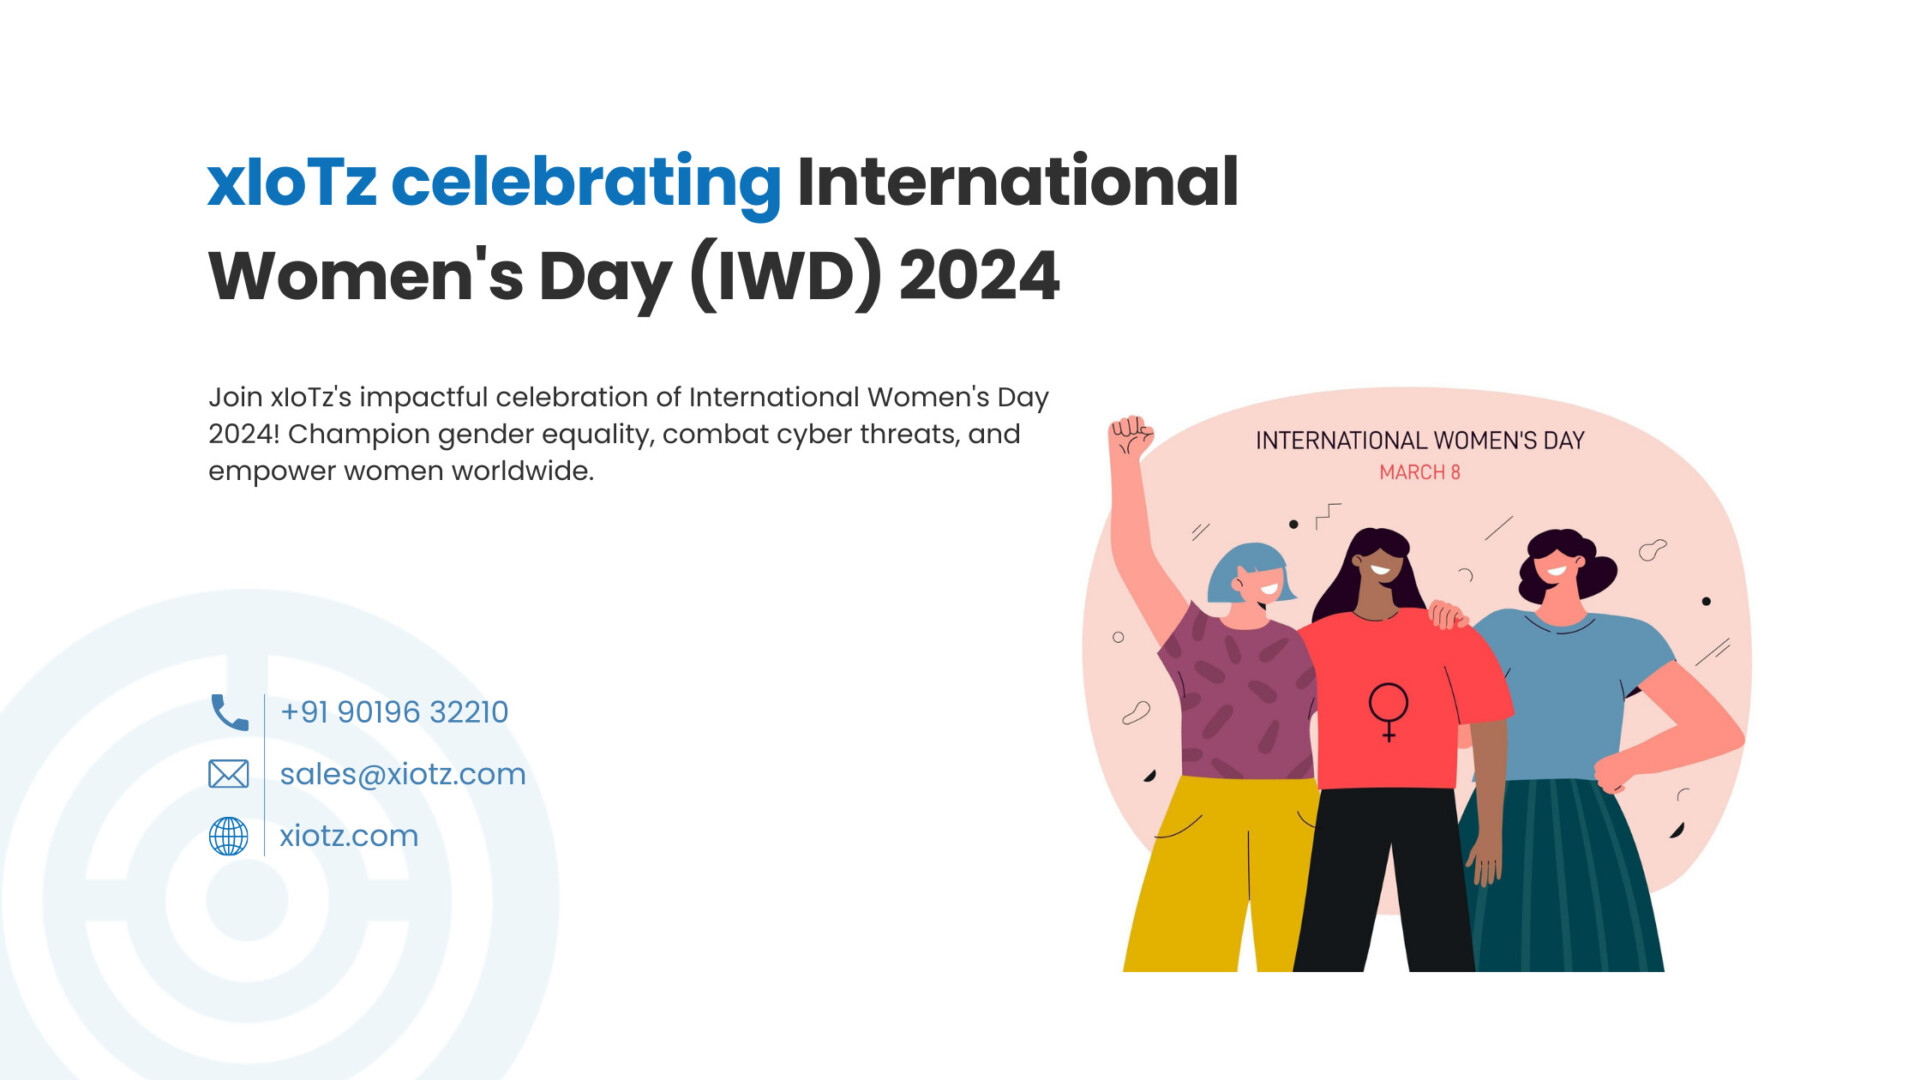 xIoTz celebrating International Women’s Day (IWD) 2024